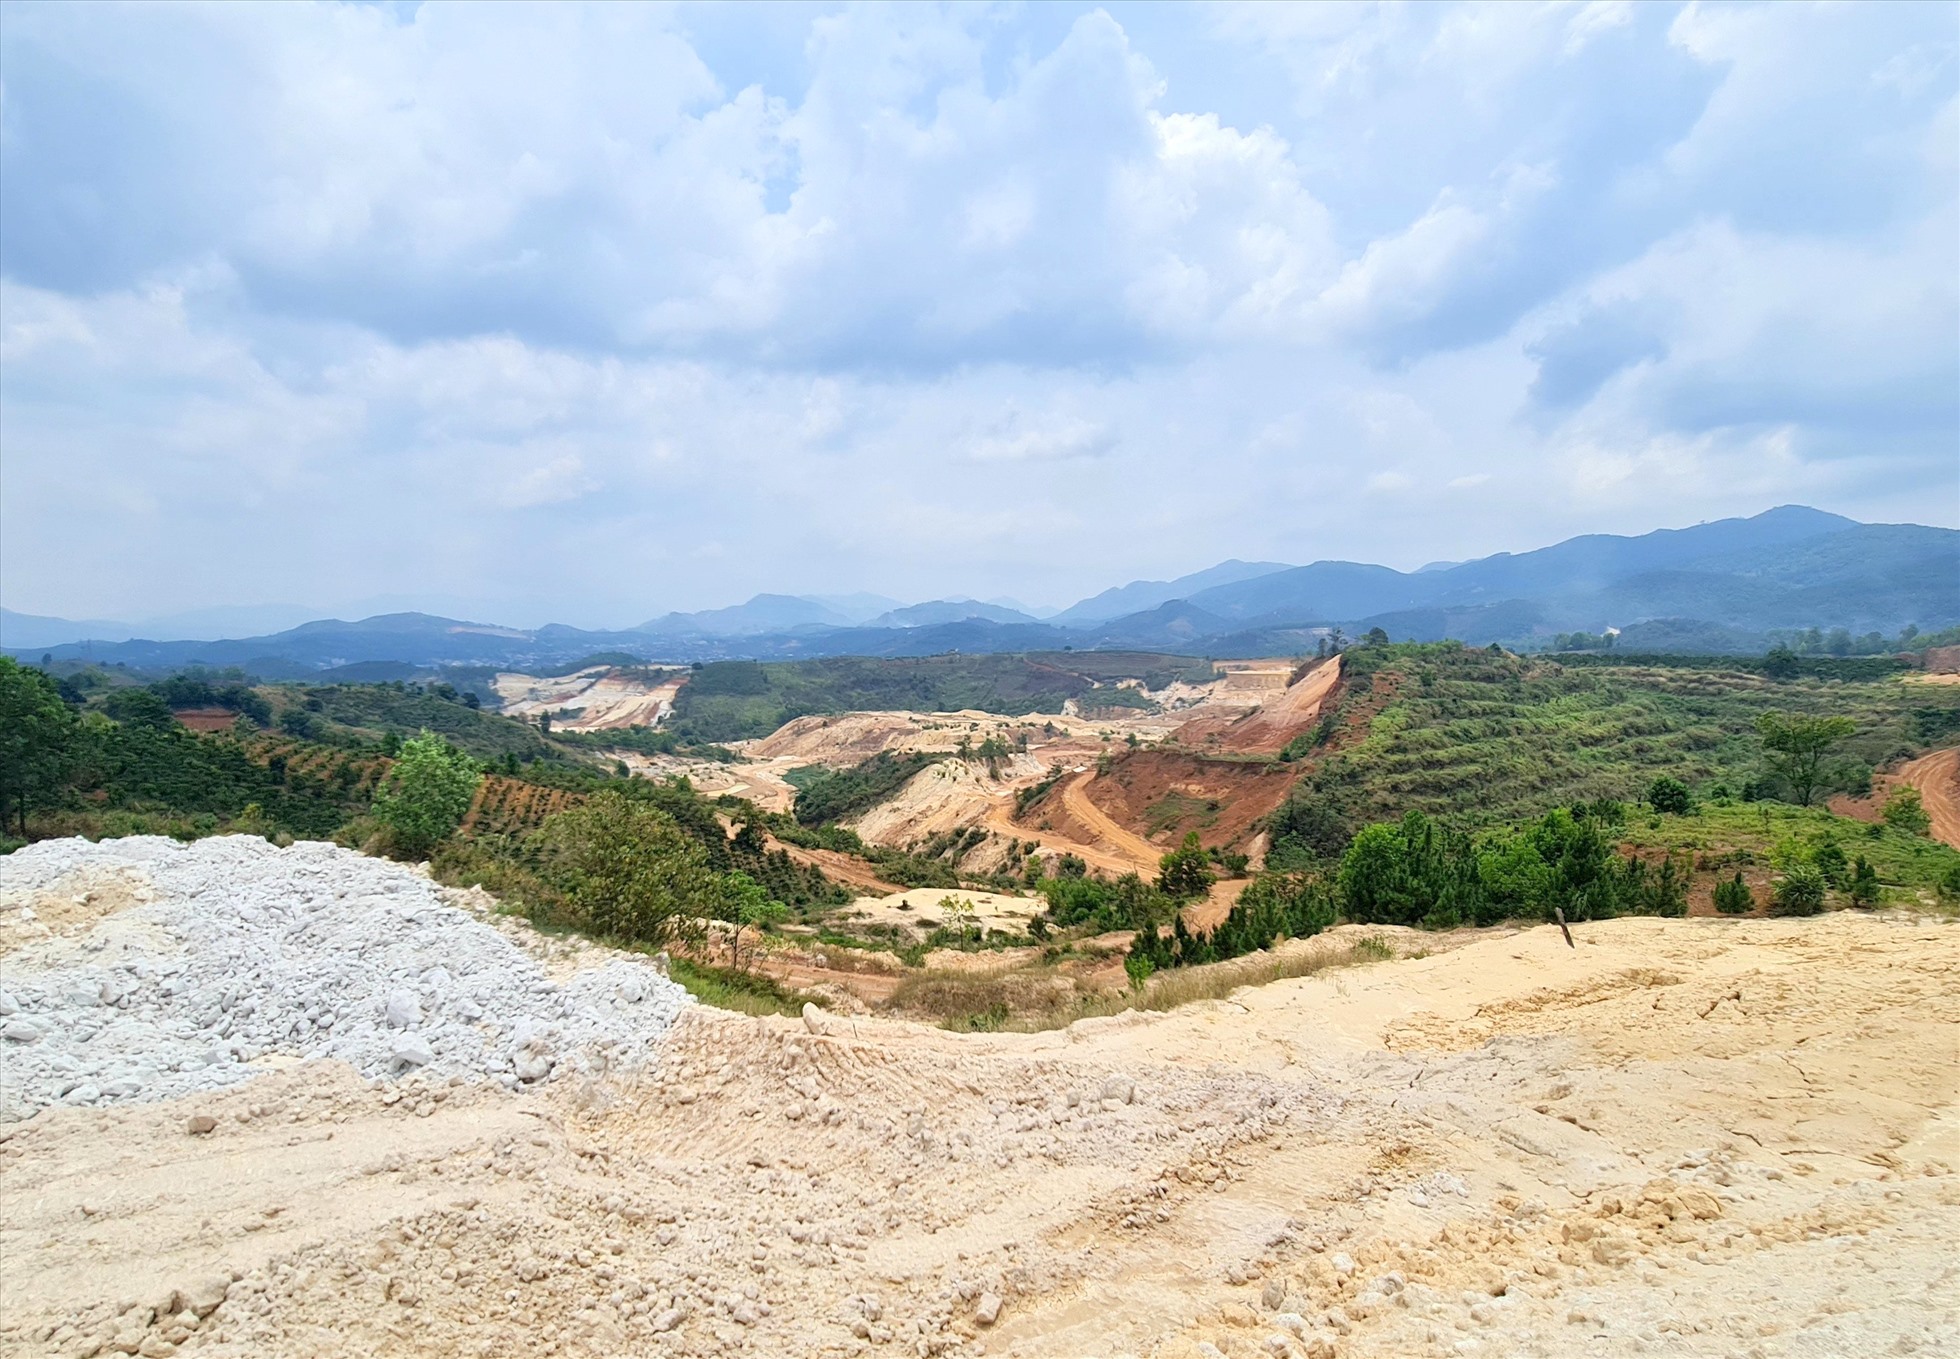 Khu vực khai thác cao lanh ở tỉnh Lâm Đồng. Ảnh: Quốc Hùng